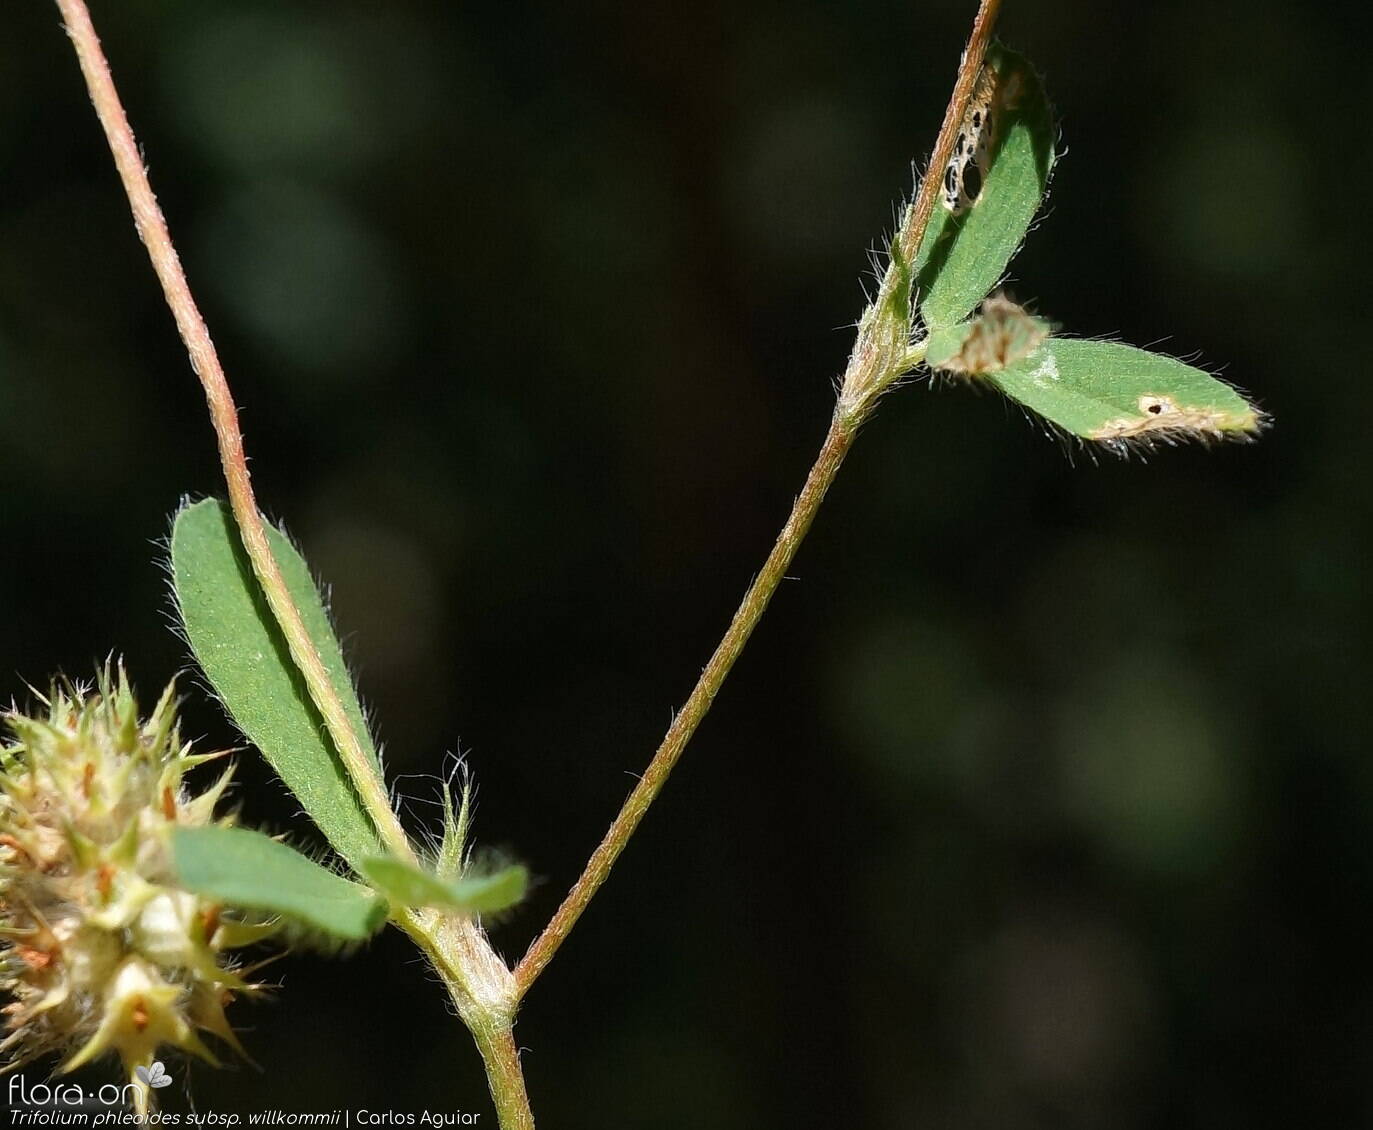 Trifolium phleoides willkommii - Caule | Carlos Aguiar; CC BY-NC 4.0